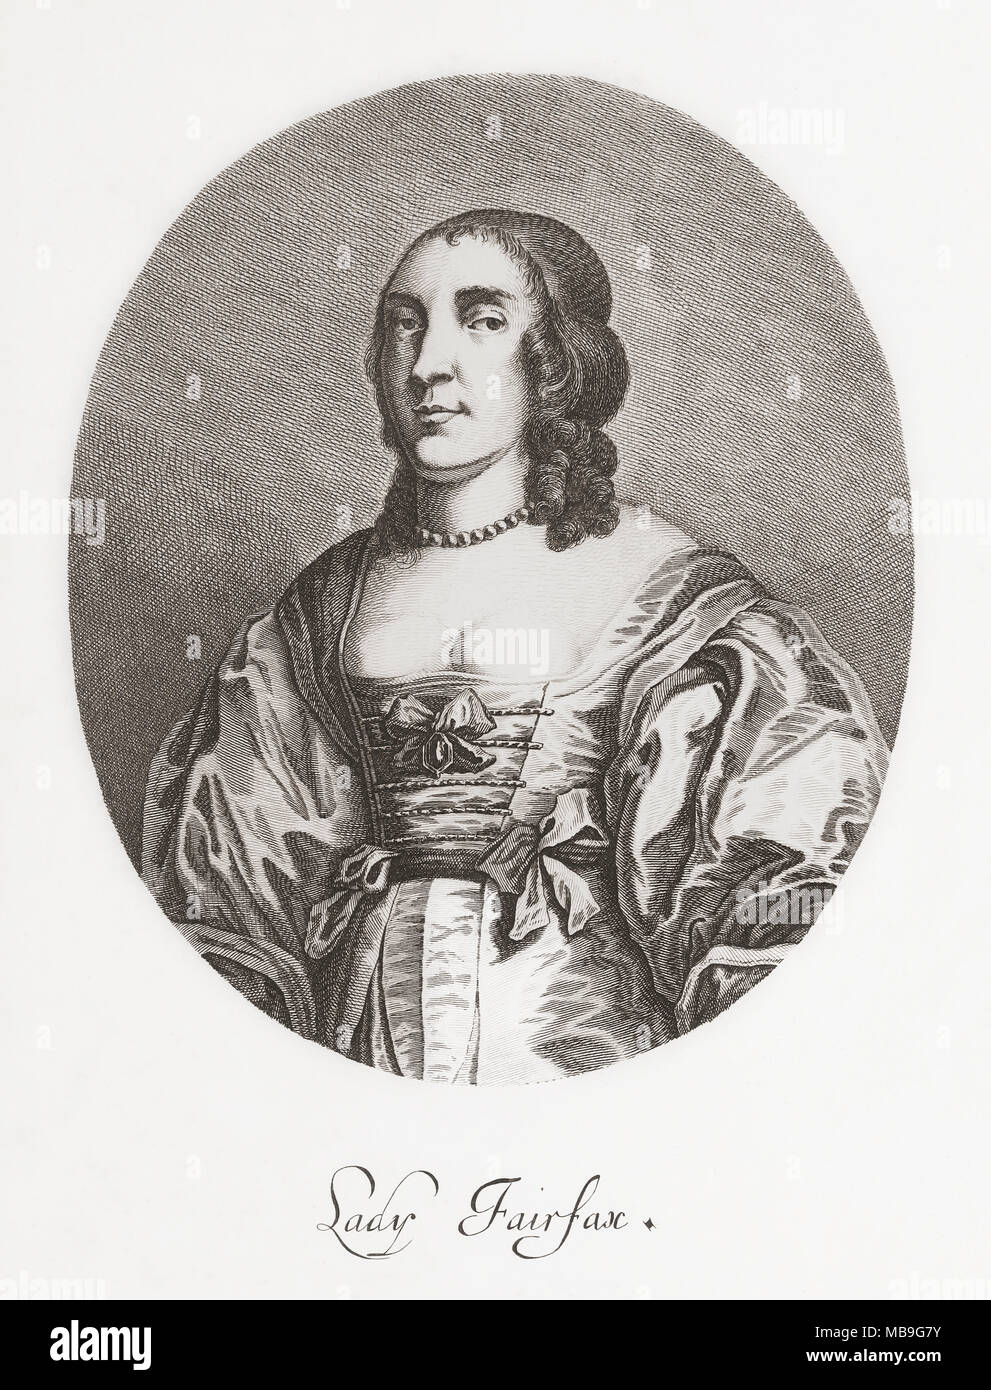 Anne, signora Fairfax, 1617/8-1665. Nobildonna inglese. Moglie di Thomas Fairfax, 3a Lord Fairfax di Cameron. Da Woodburn's galleria di ritratti di rare, pubblicato 1816. Foto Stock